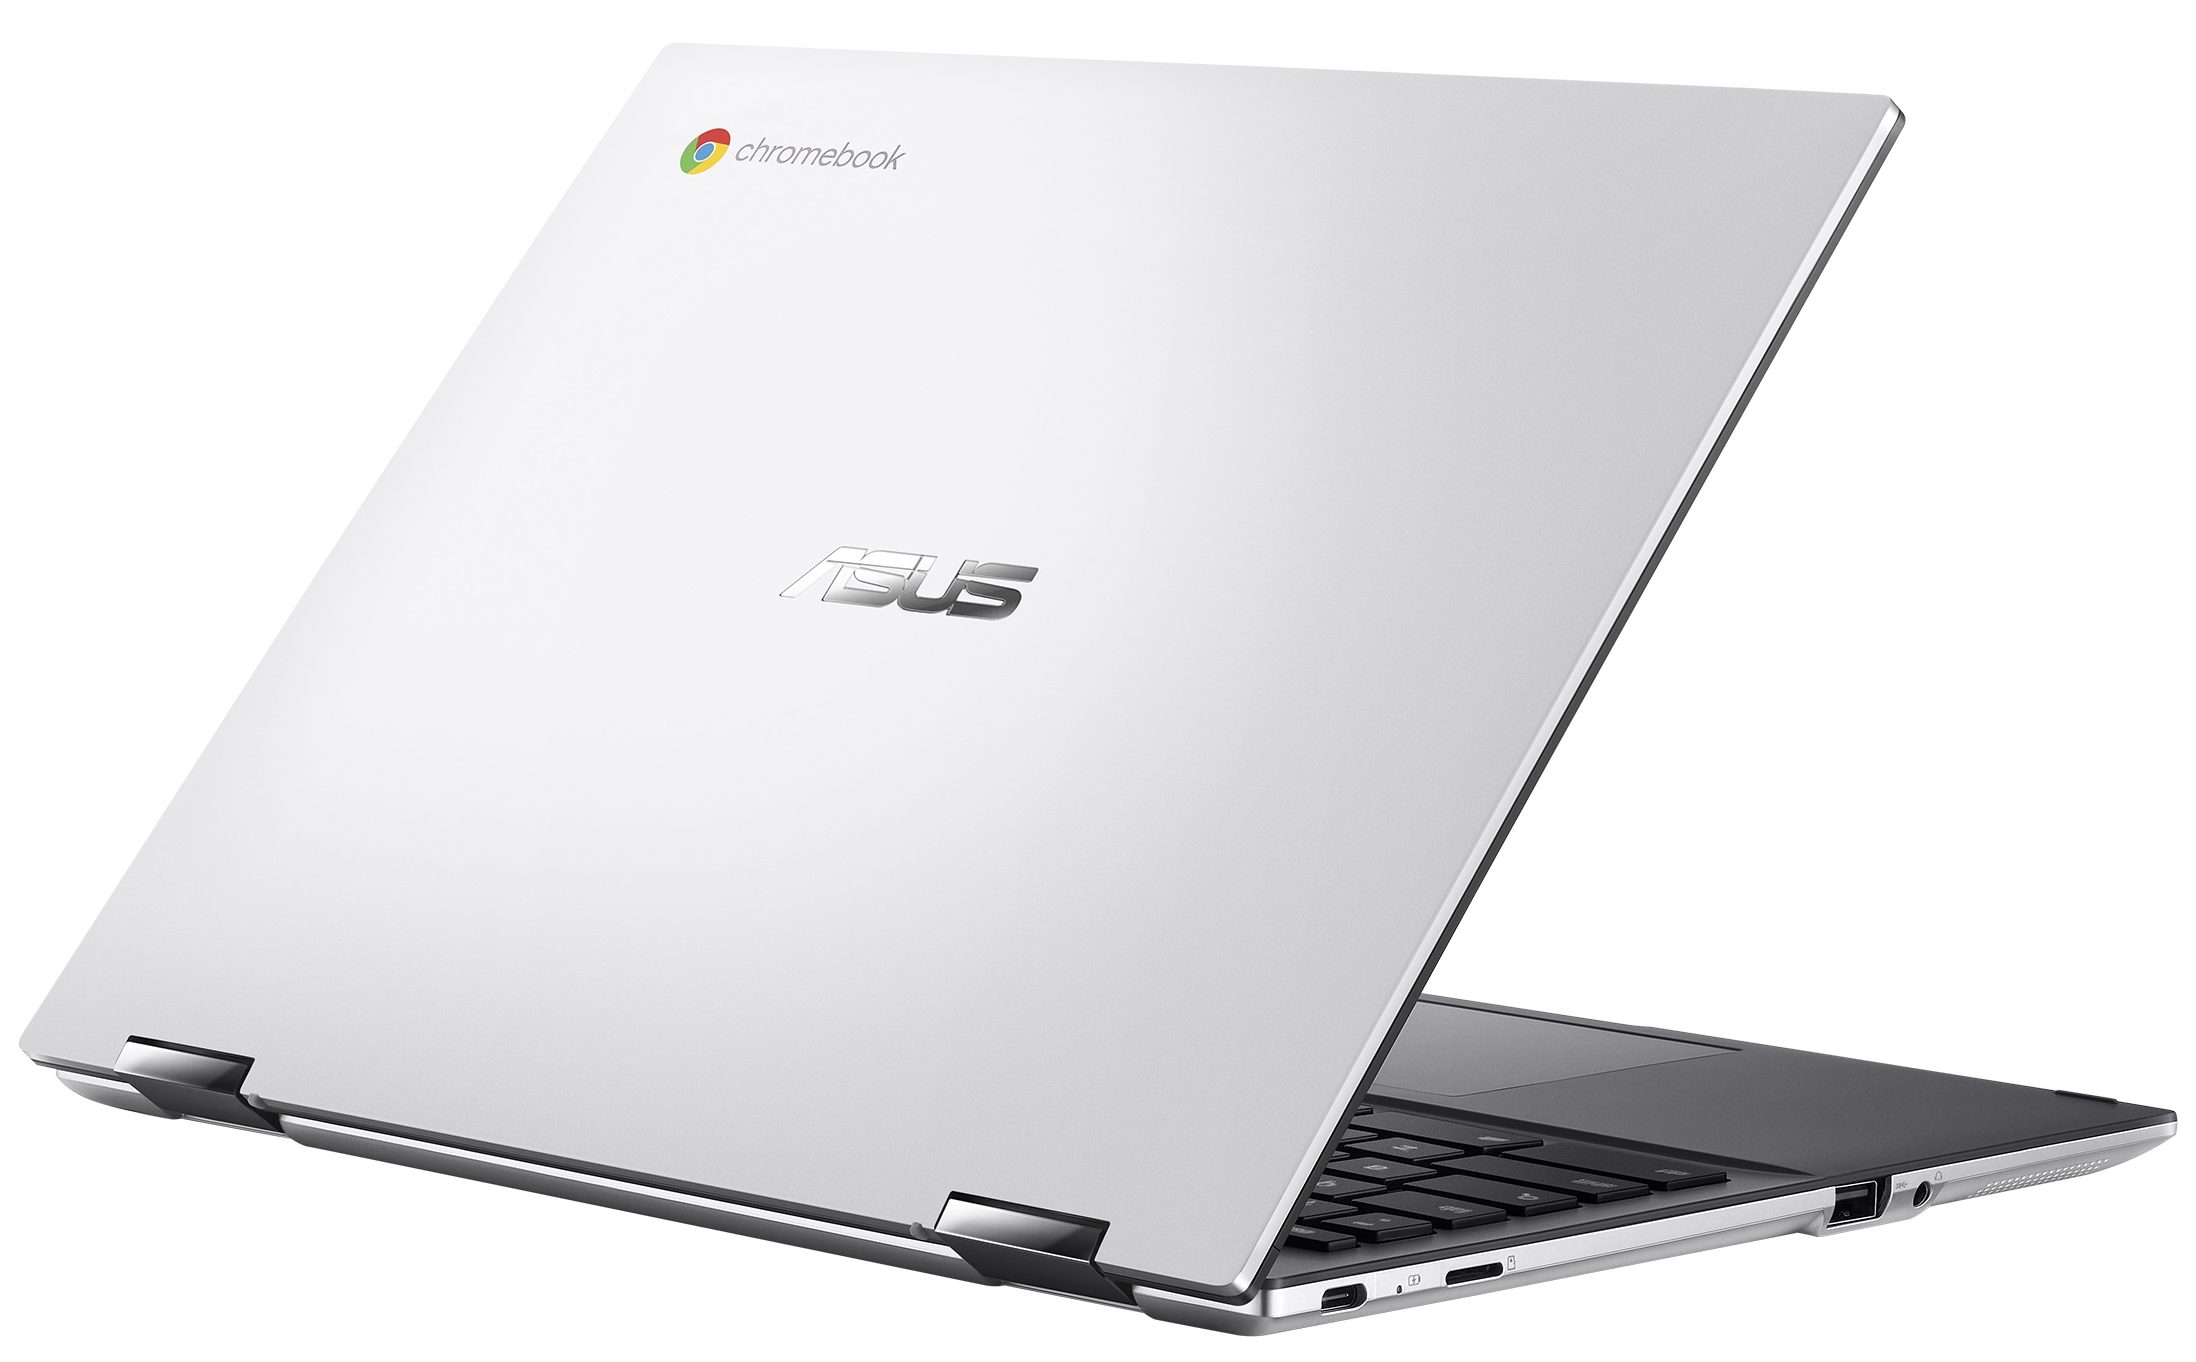 华硕Chromebook Flip CM3（CM3200）评测--IPS显示屏和超长电池寿命 